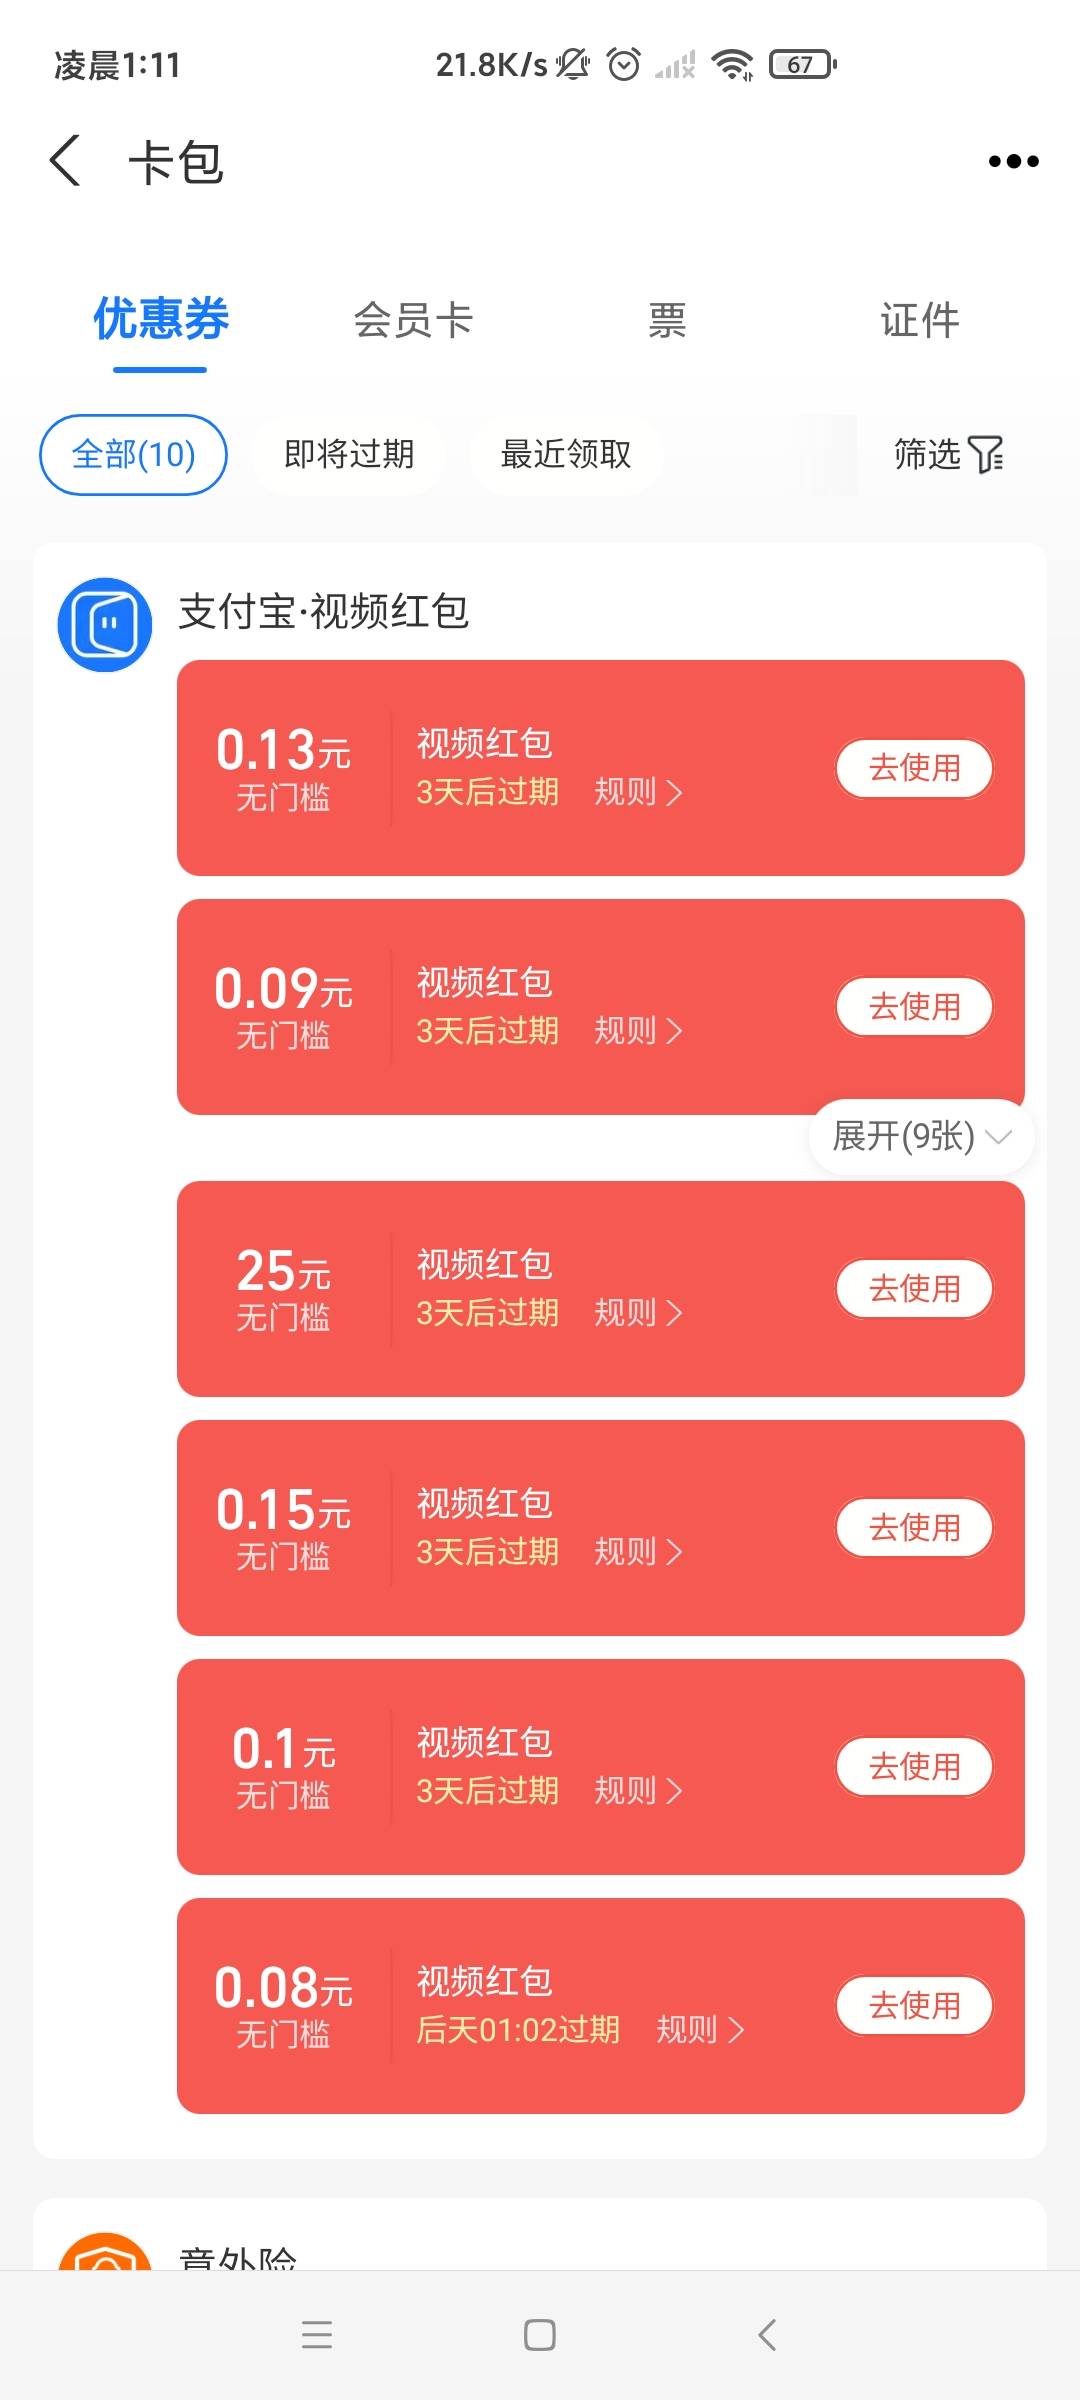 深圳通不行

73 / 作者:莫怕女 / 